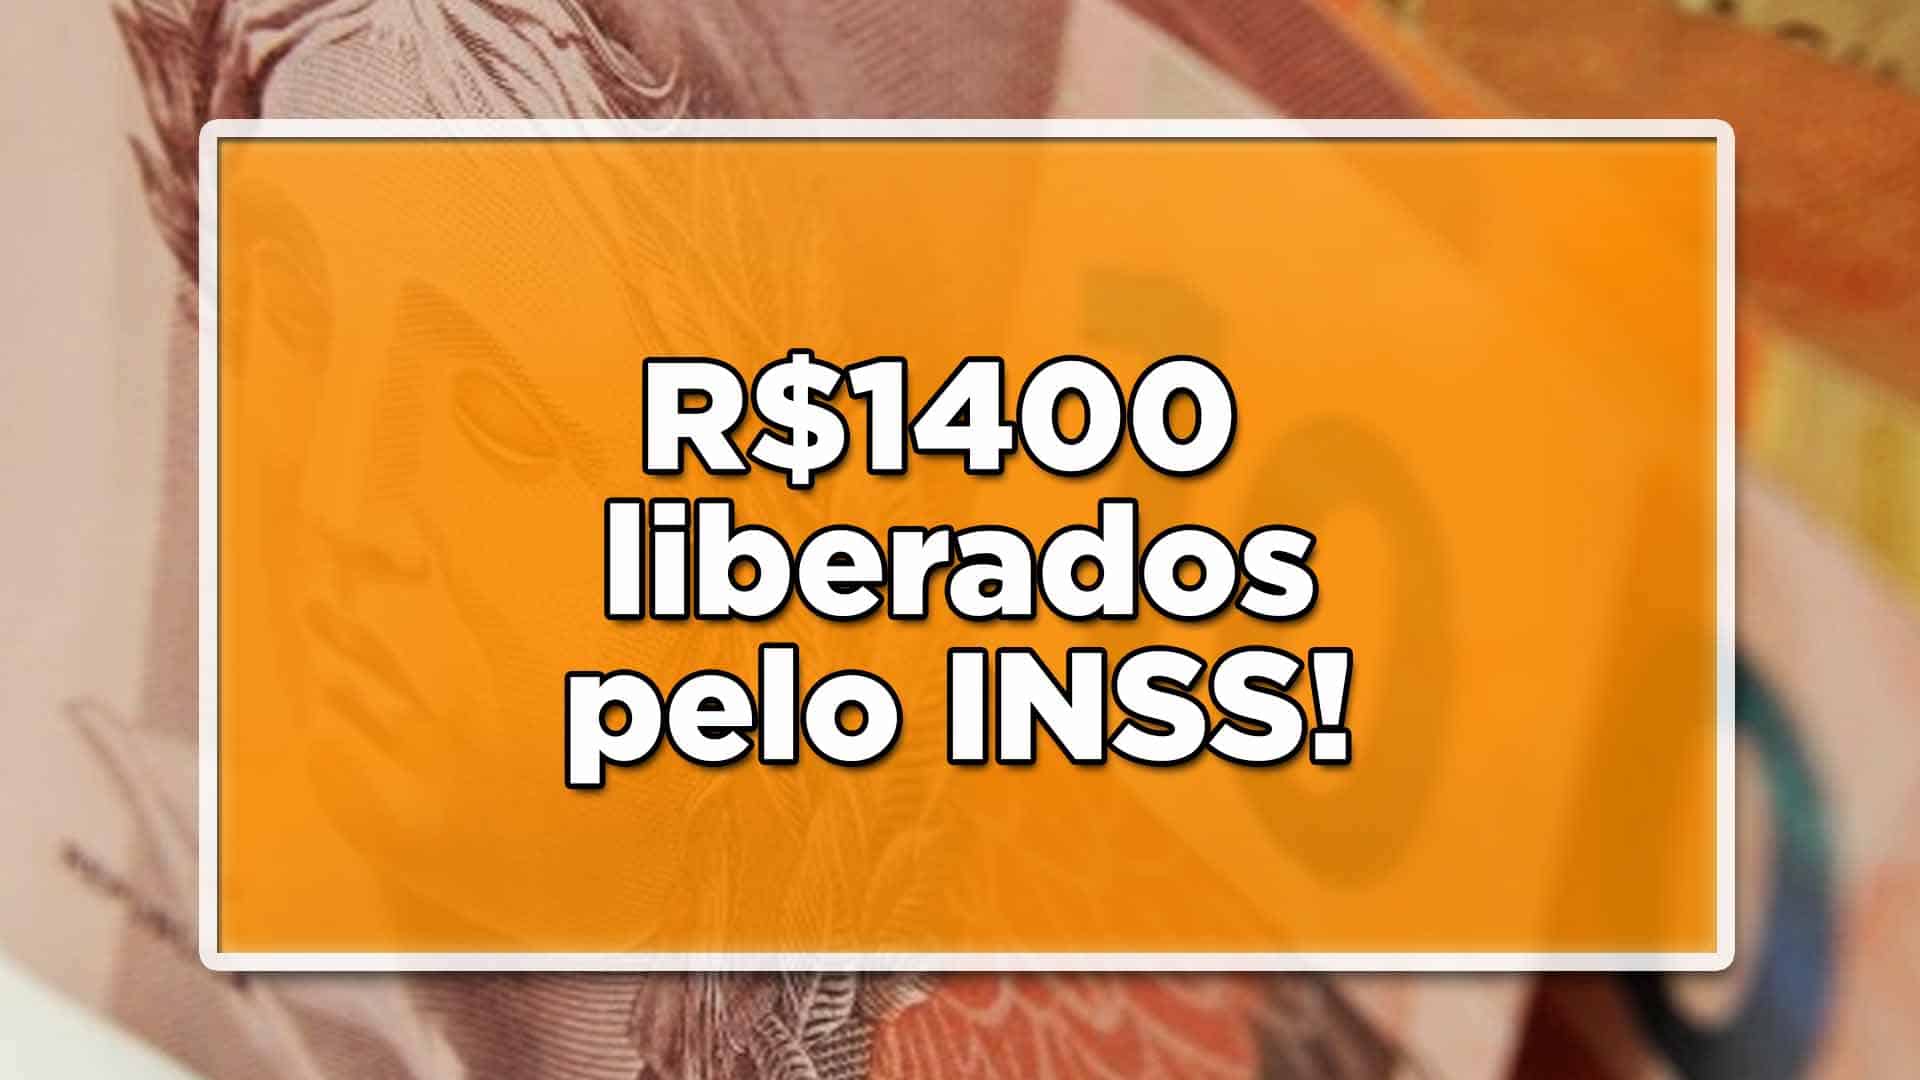 Para muitos aposentados e pensionistas do INSS que possuem margem, está liberado um saque de R$1.400! Confira: